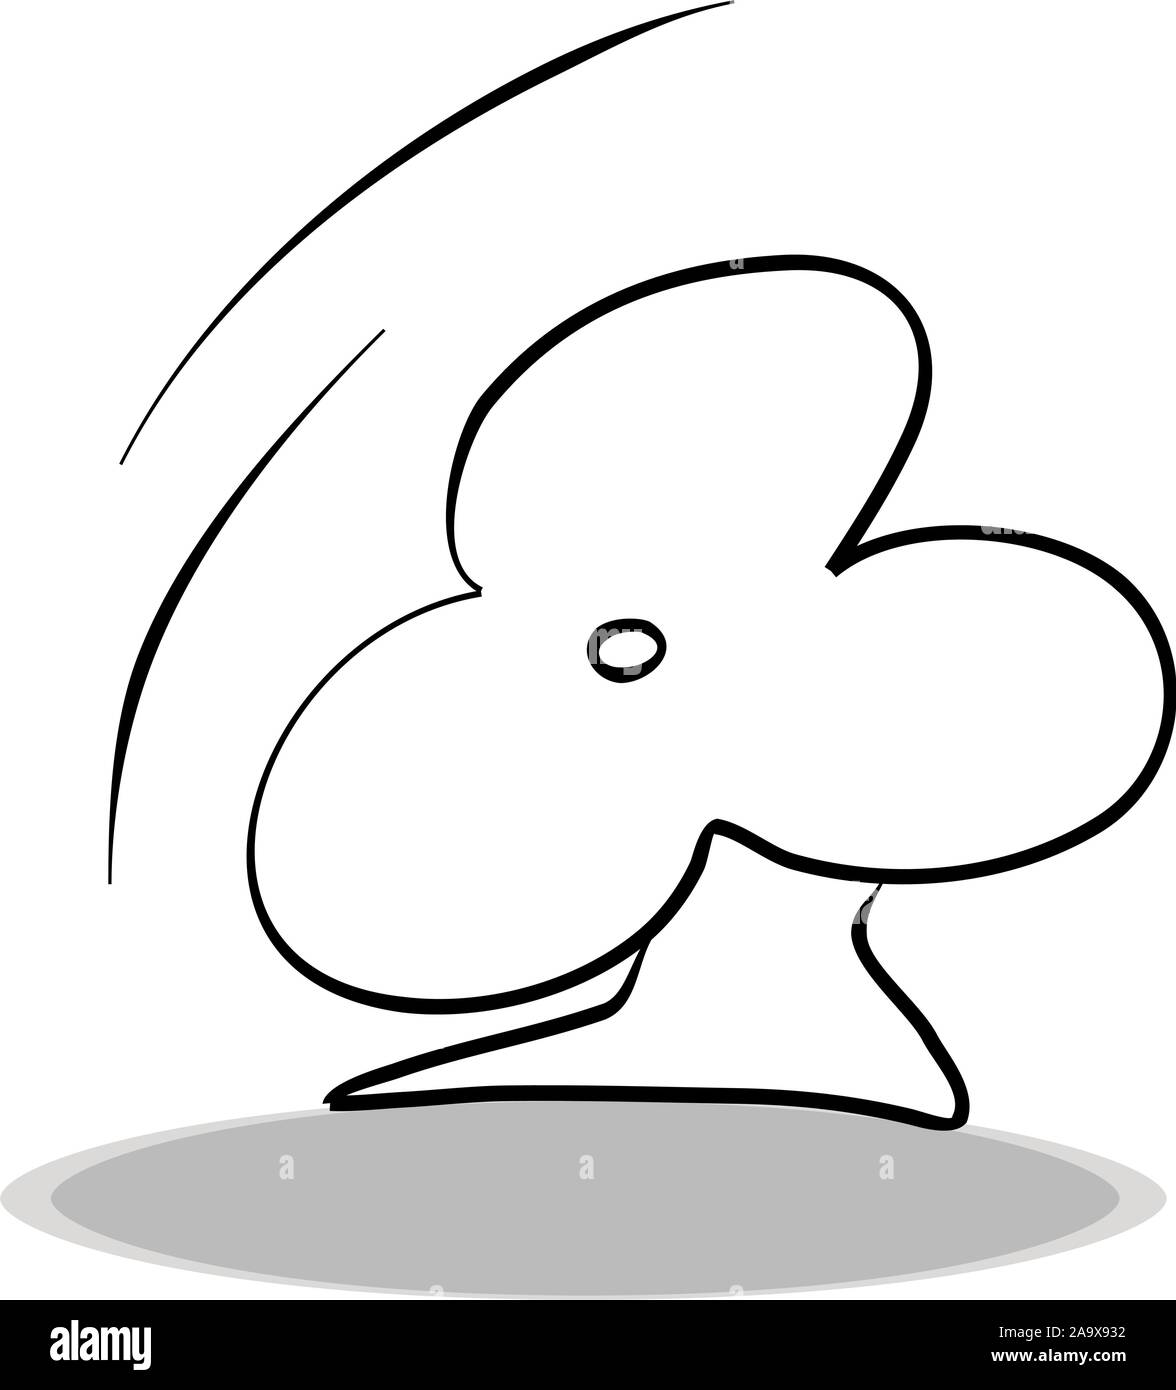 Icona della ventola su sfondo bianco, design piatto, del disegno a mano. Illustrazione di attrezzature climatiche, contorno di Symbol Illustrazione Vettoriale